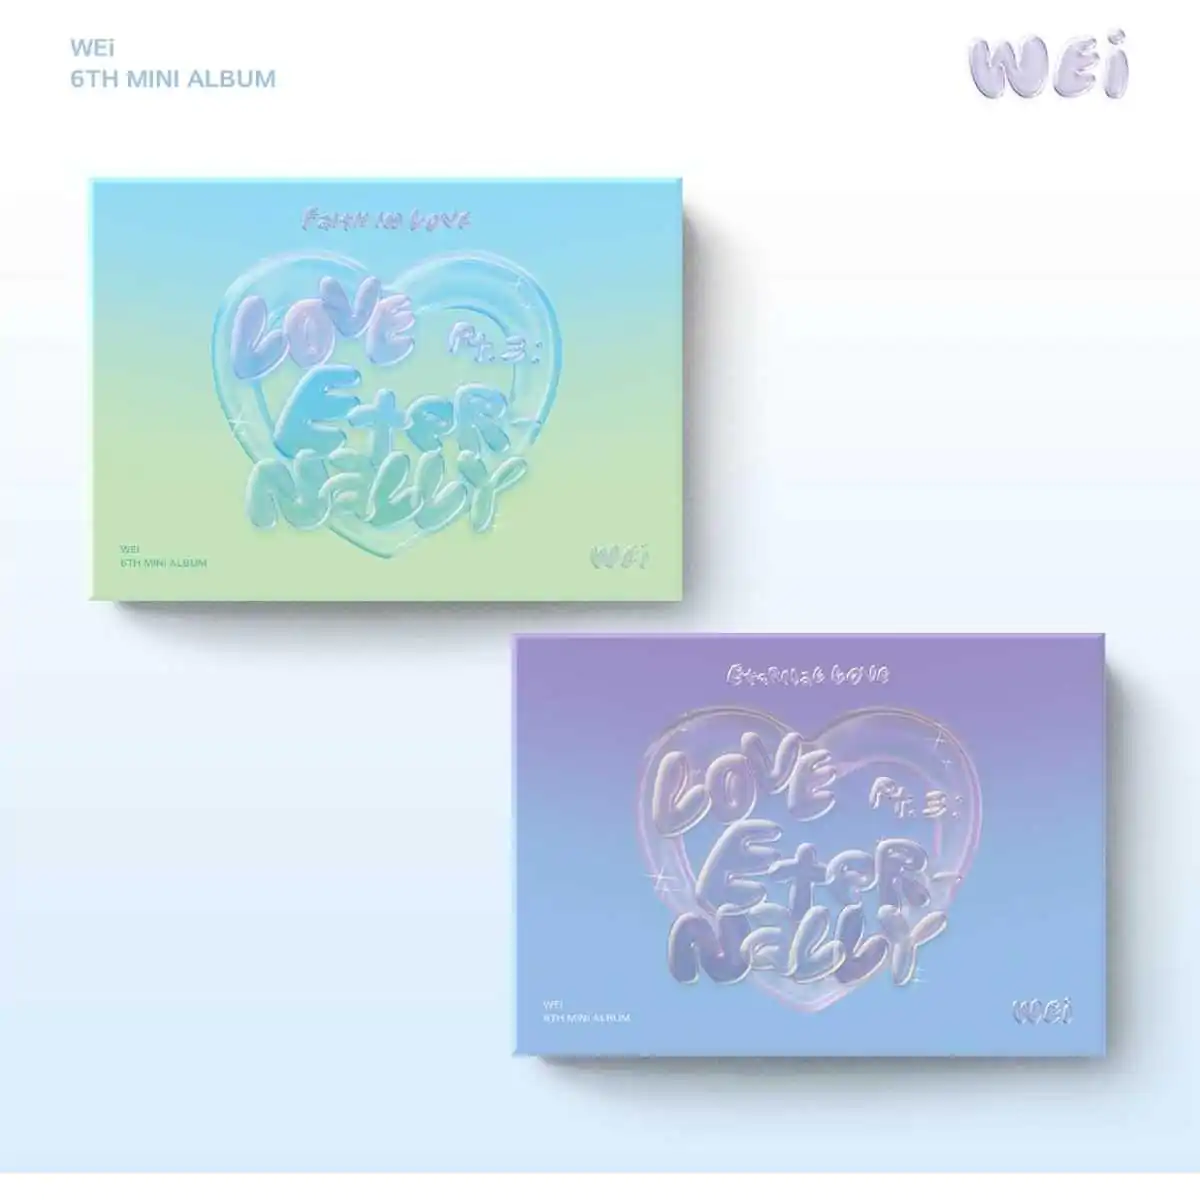 WEi - Eternally 'Eternal love' Love Pt.3 (PocaAlbum Version) (Random Ver.) (6th EP Album) 